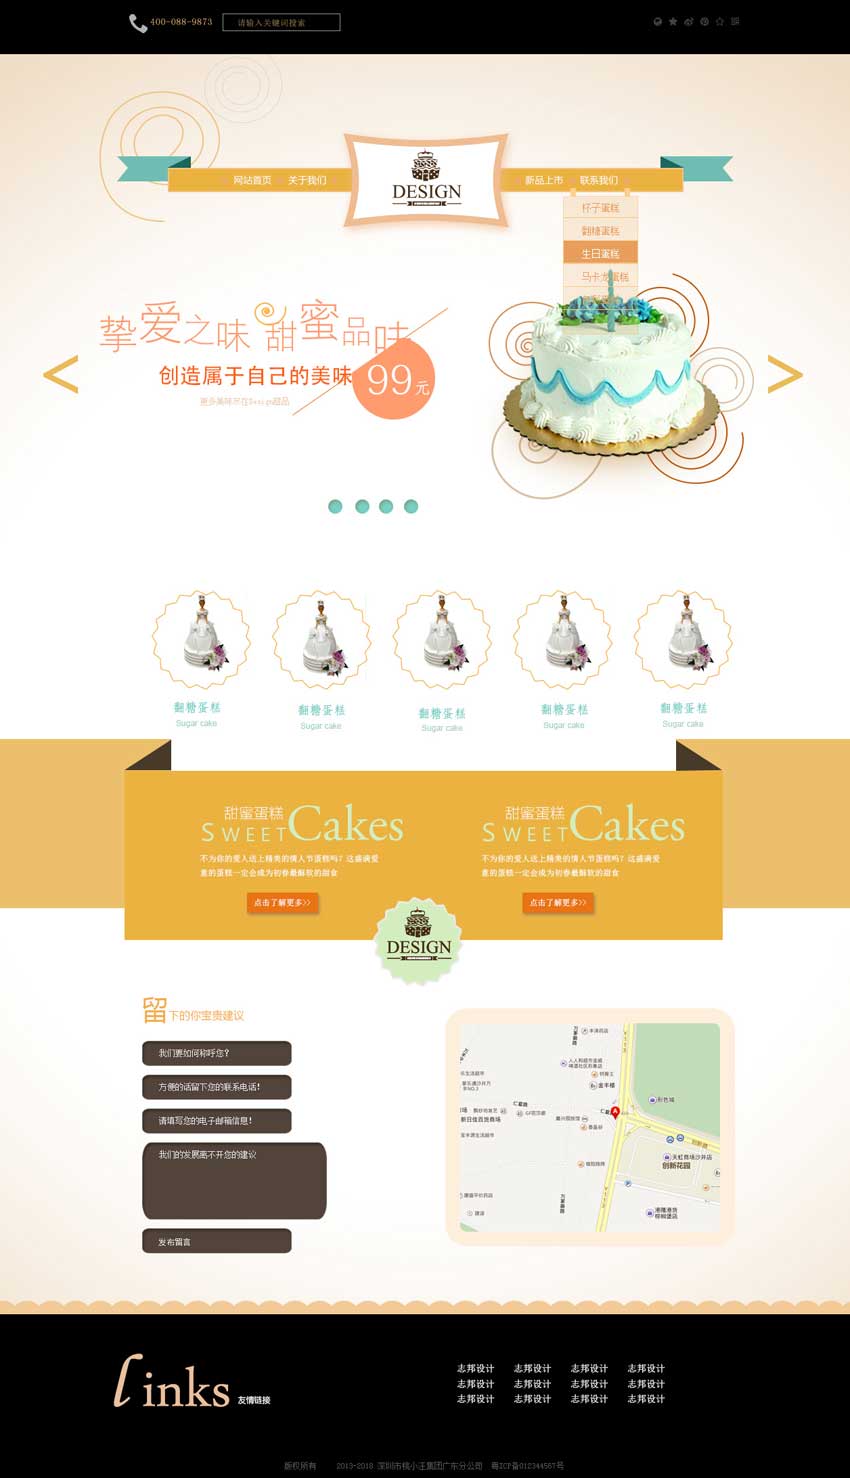 可爱的蛋糕店网站设计模板psd下载